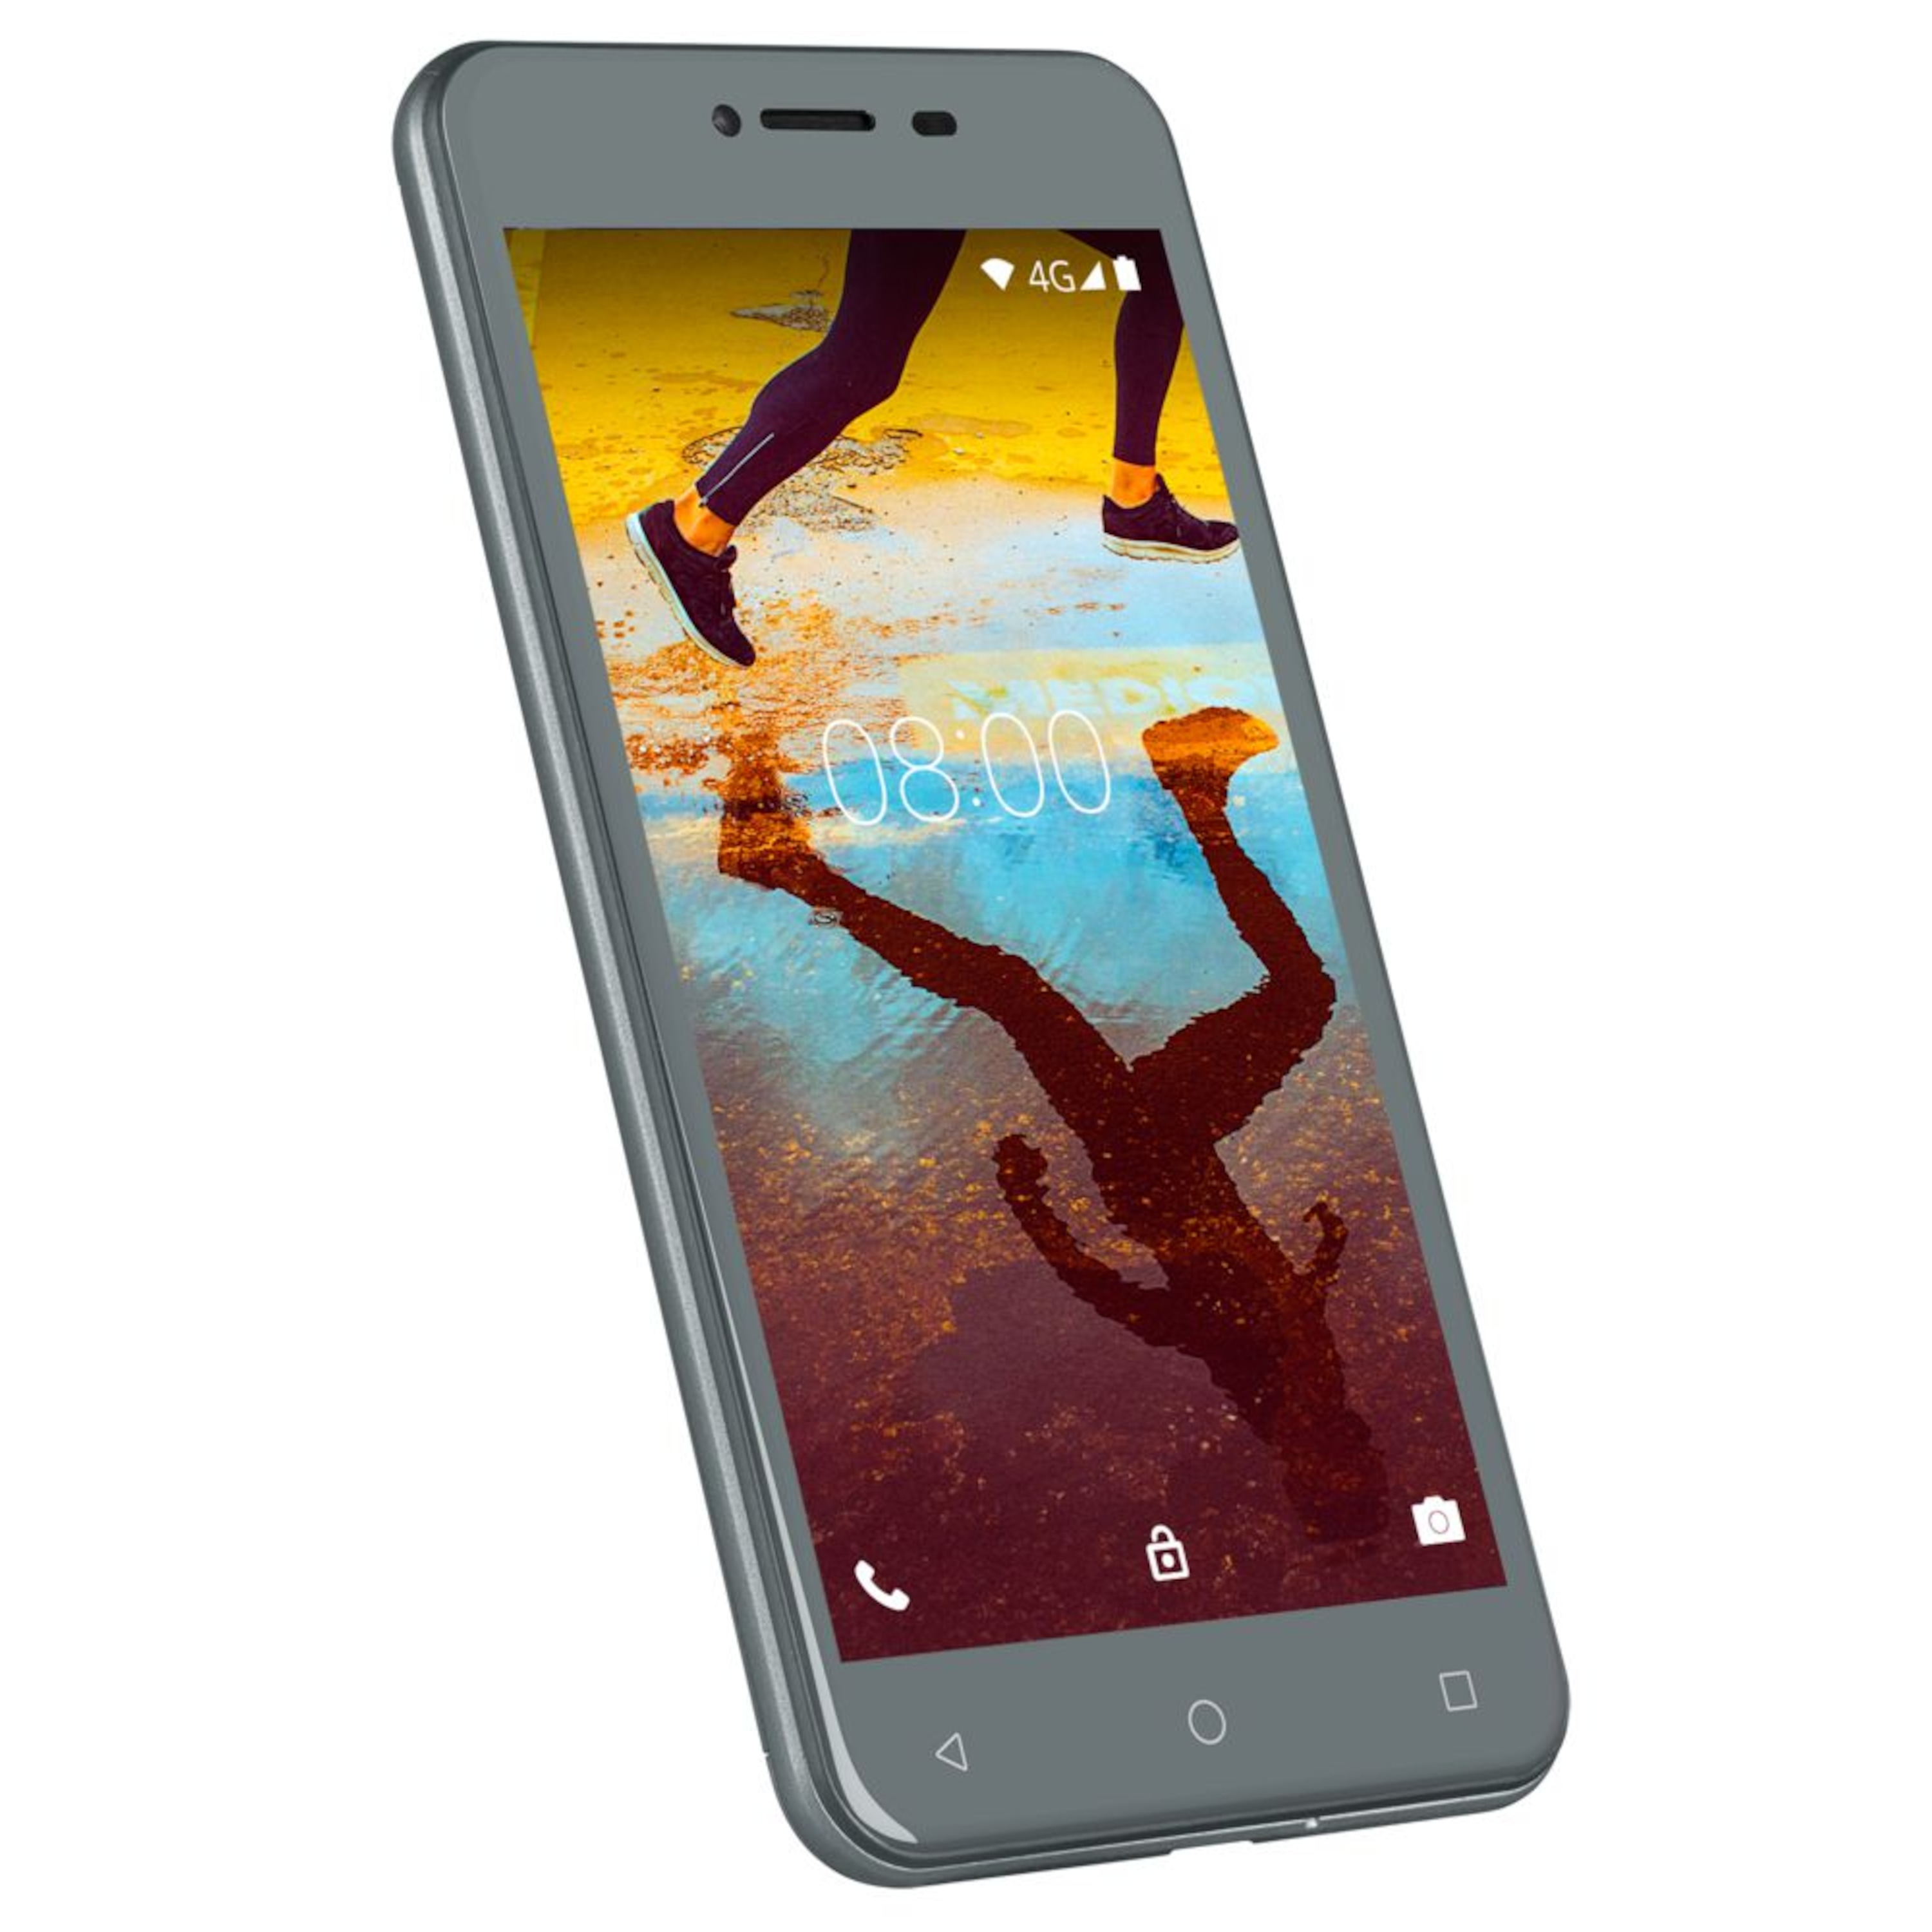 MEDION® LIFE® E5008 Smartphone, 12,7 cm (5") HD Display, Android™ 7.0, 34 GB Speicher, Quad-Core-Prozessor  (B-Ware)